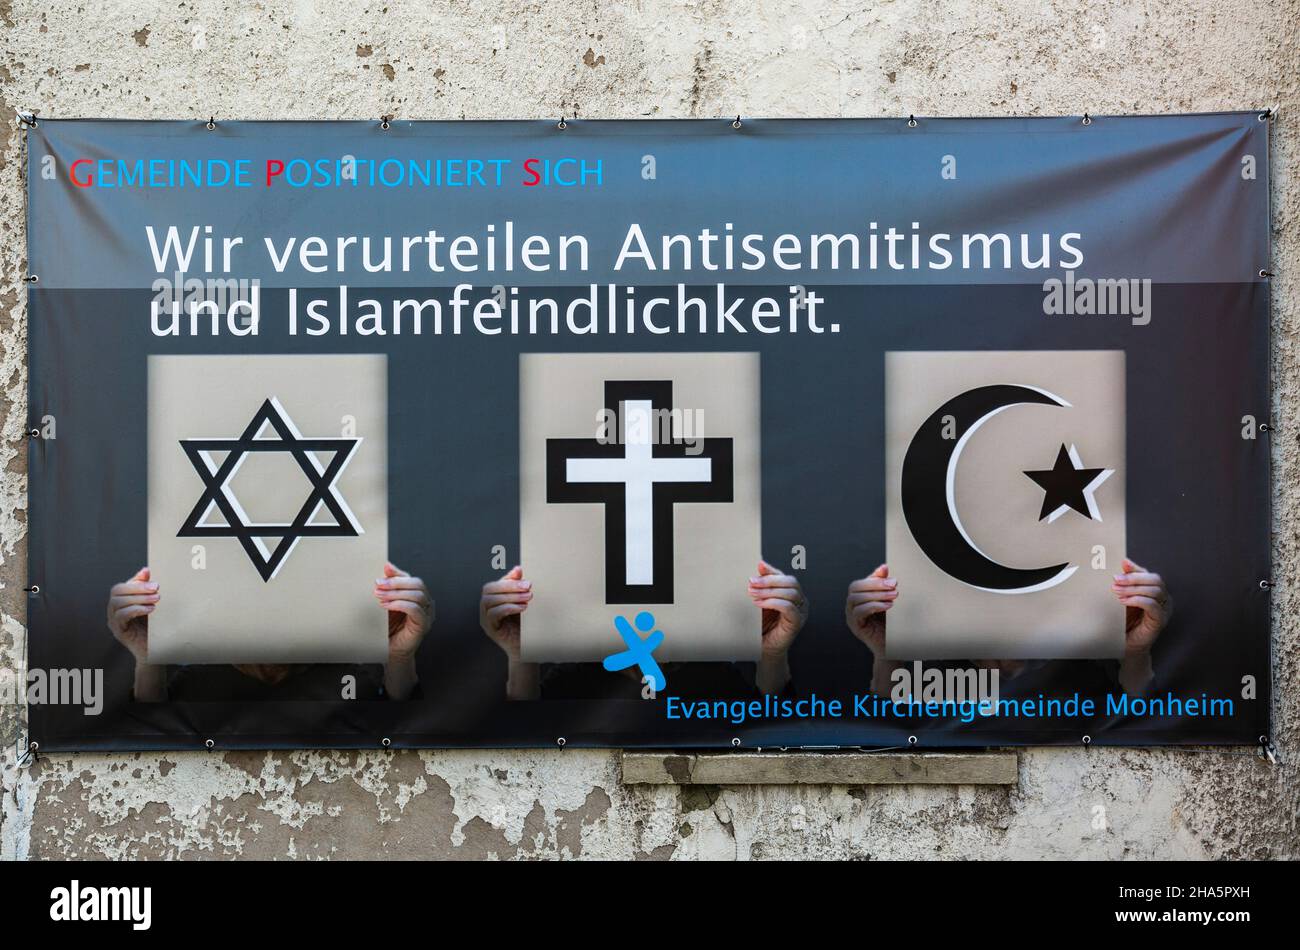 deutschland,Gesellschaft,Religion,christliche Kirche,die evangelische Kirchengemeinde monheim am rhein verurteilte antisemitismus und islamophobie auf einem Banner,die Symbole für judentum, christentum und islam sind gleichberechtigt nebeneinander angeordnet Stockfoto